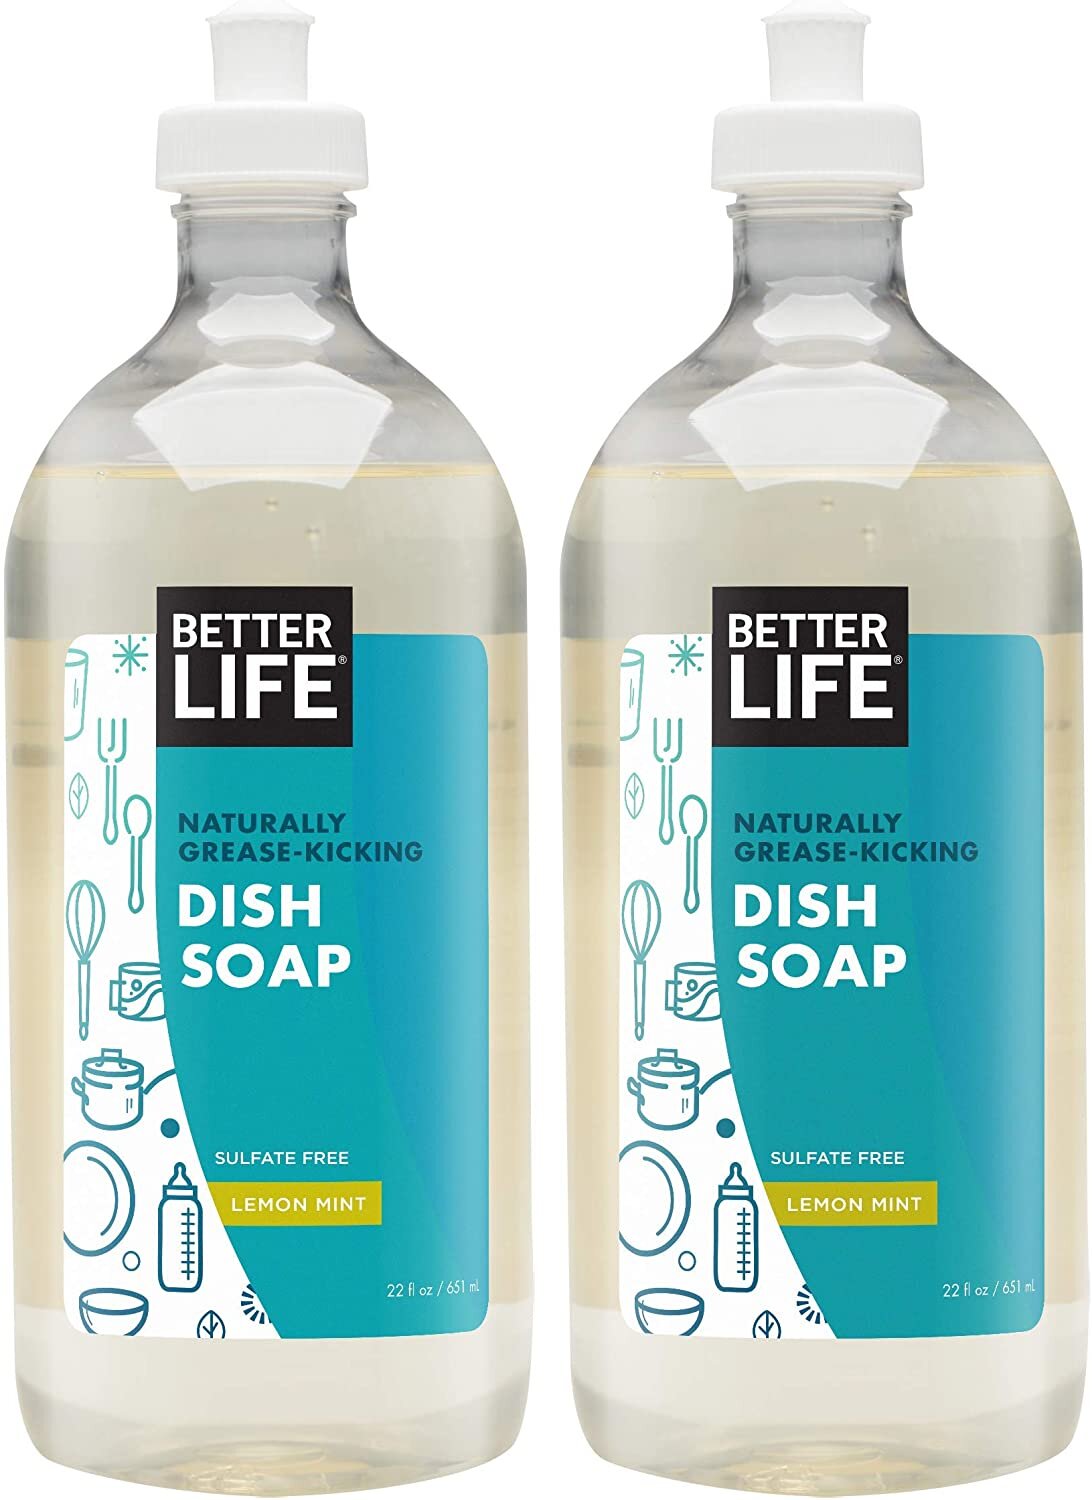 Better Life natural dish soap